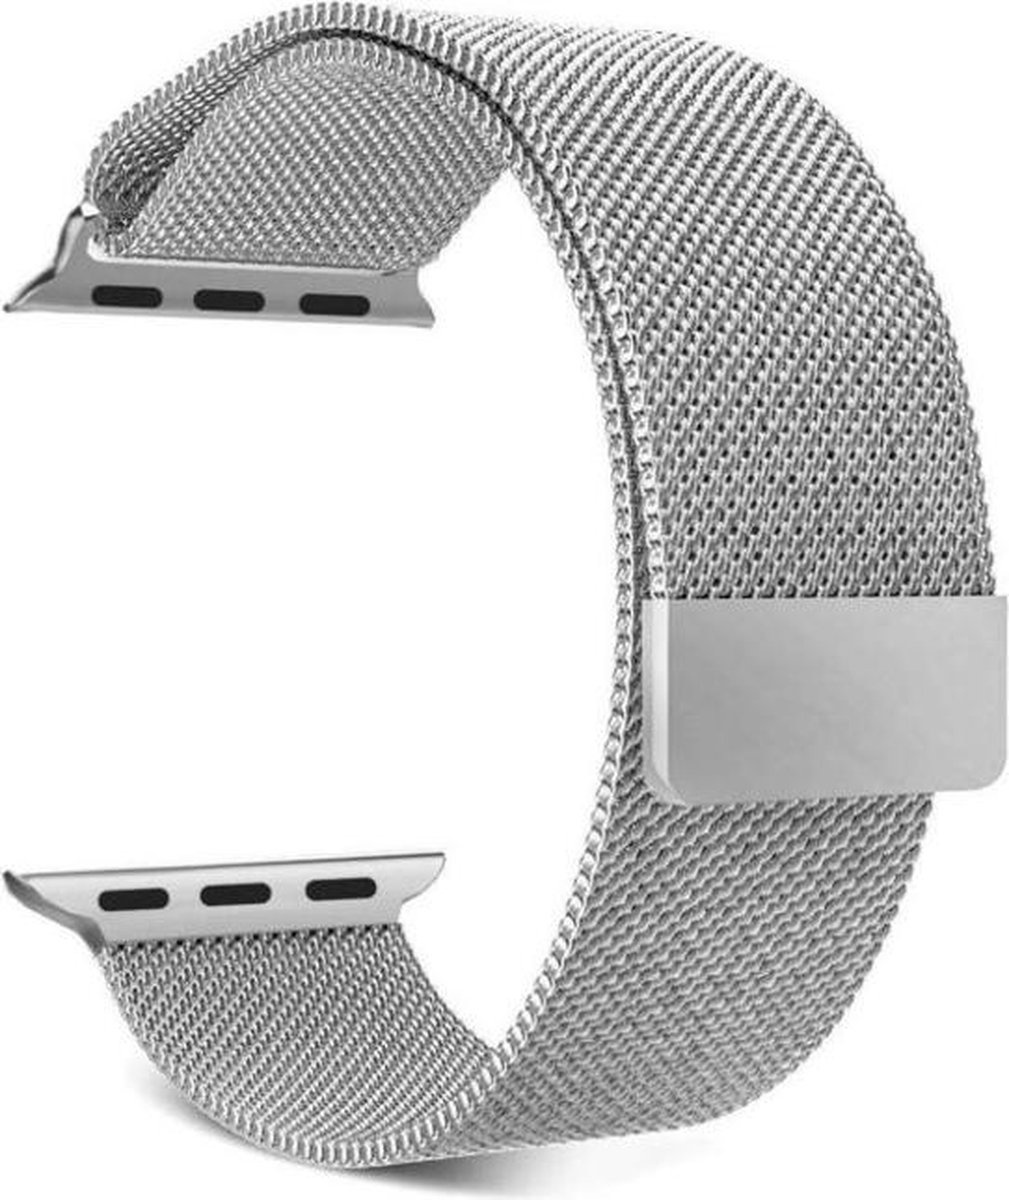 NoXx Geschikt Voor Apple Watch 8 Bandje Magneetsluiting - Horloge Band Voor Apple Watch 8 41 mm Milanees - Zwart En Zilver